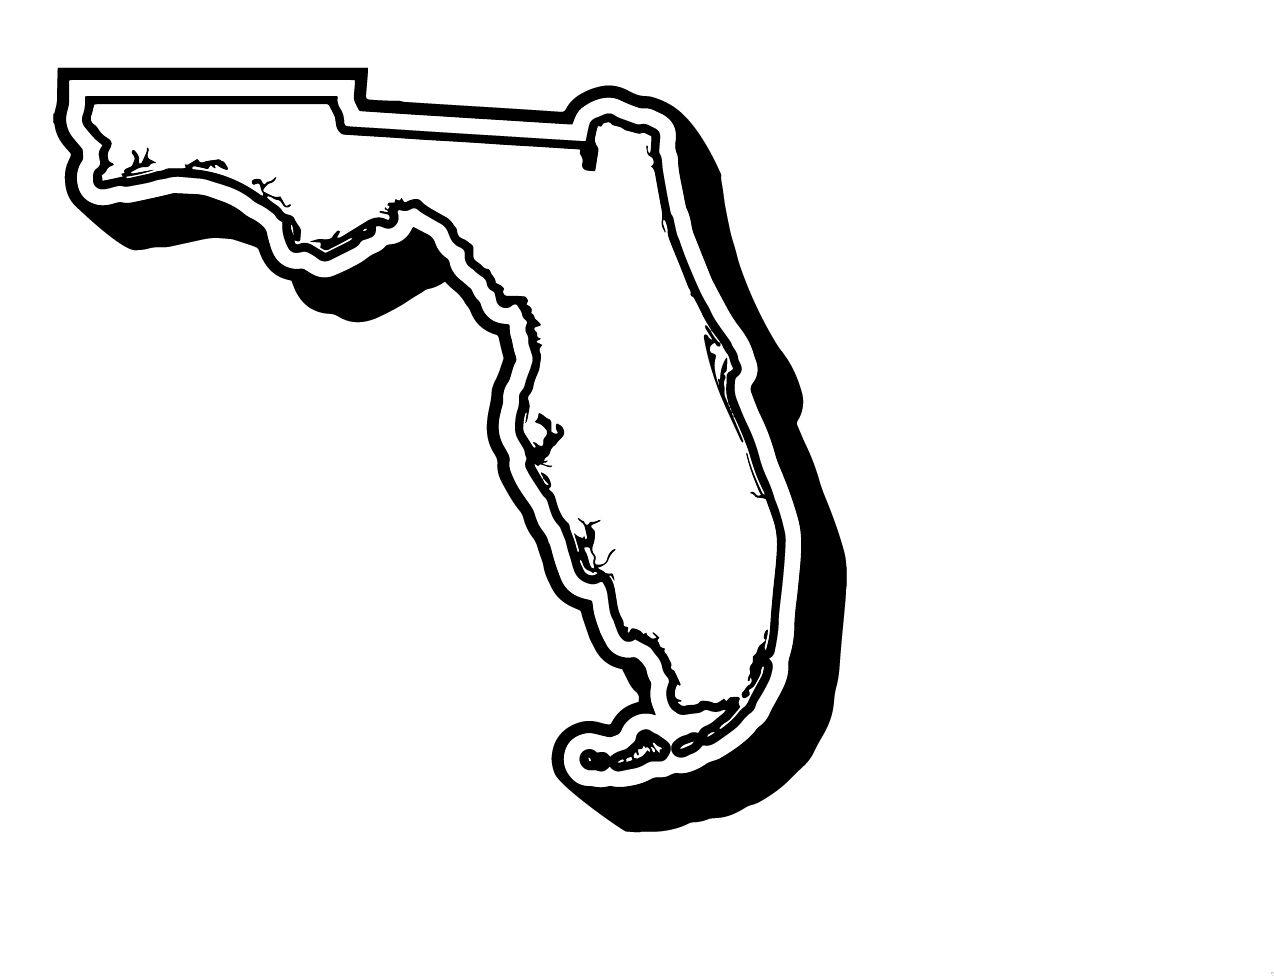 Florida Logo - Florida logo